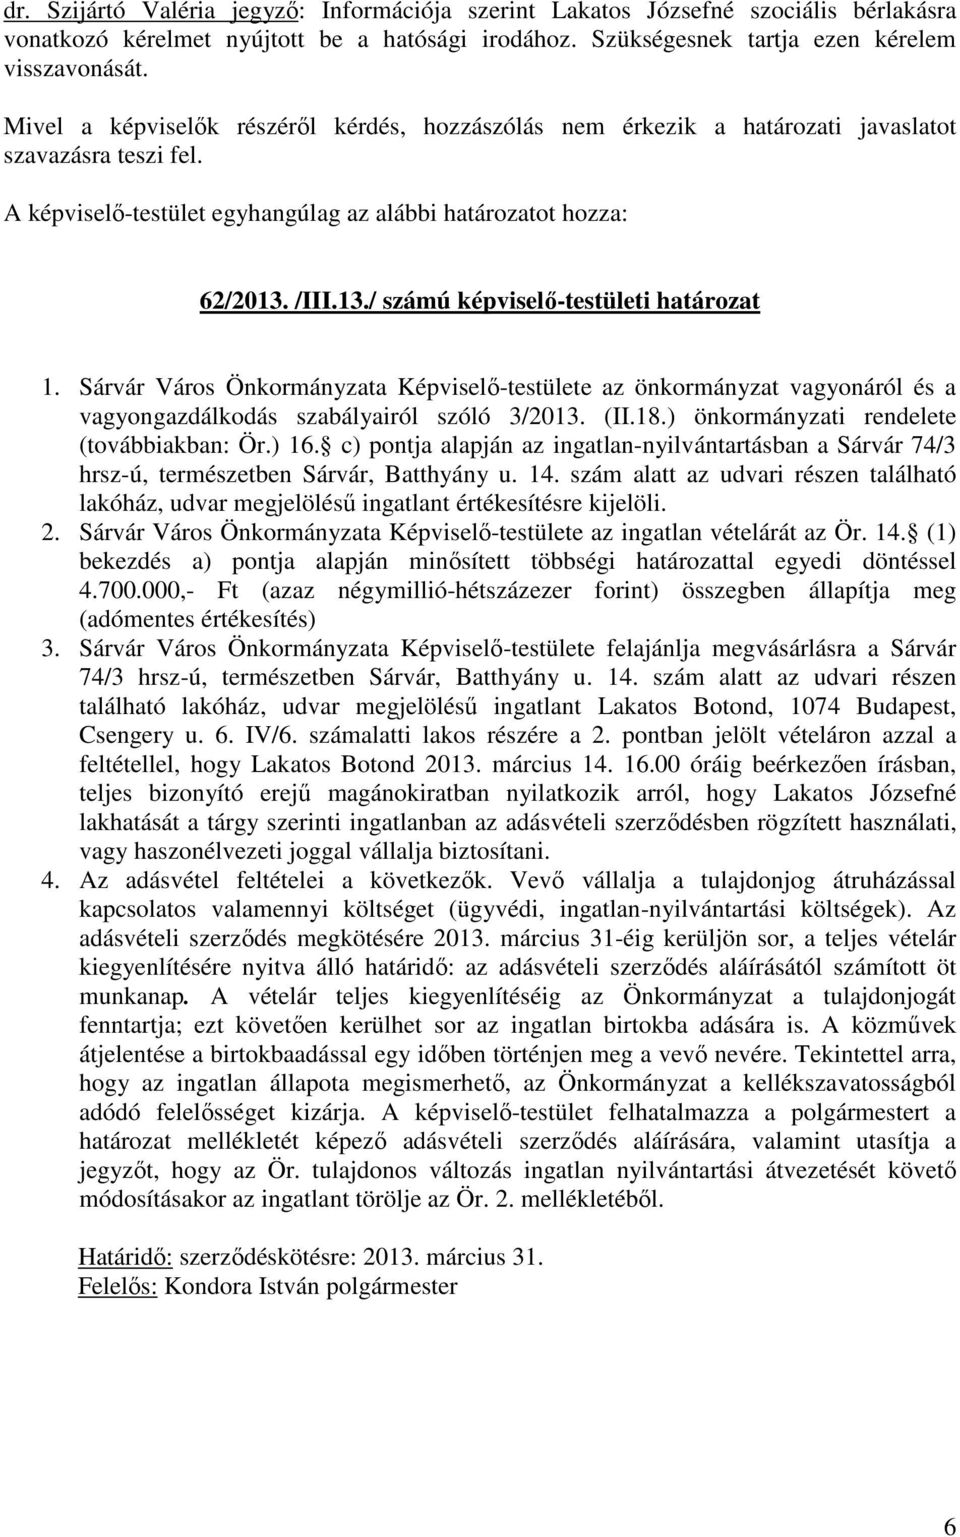 Sárvár Város Önkormányzata Képviselő-testülete az önkormányzat vagyonáról és a vagyongazdálkodás szabályairól szóló 3/2013. (II.18.) önkormányzati rendelete (továbbiakban: Ör.) 16.